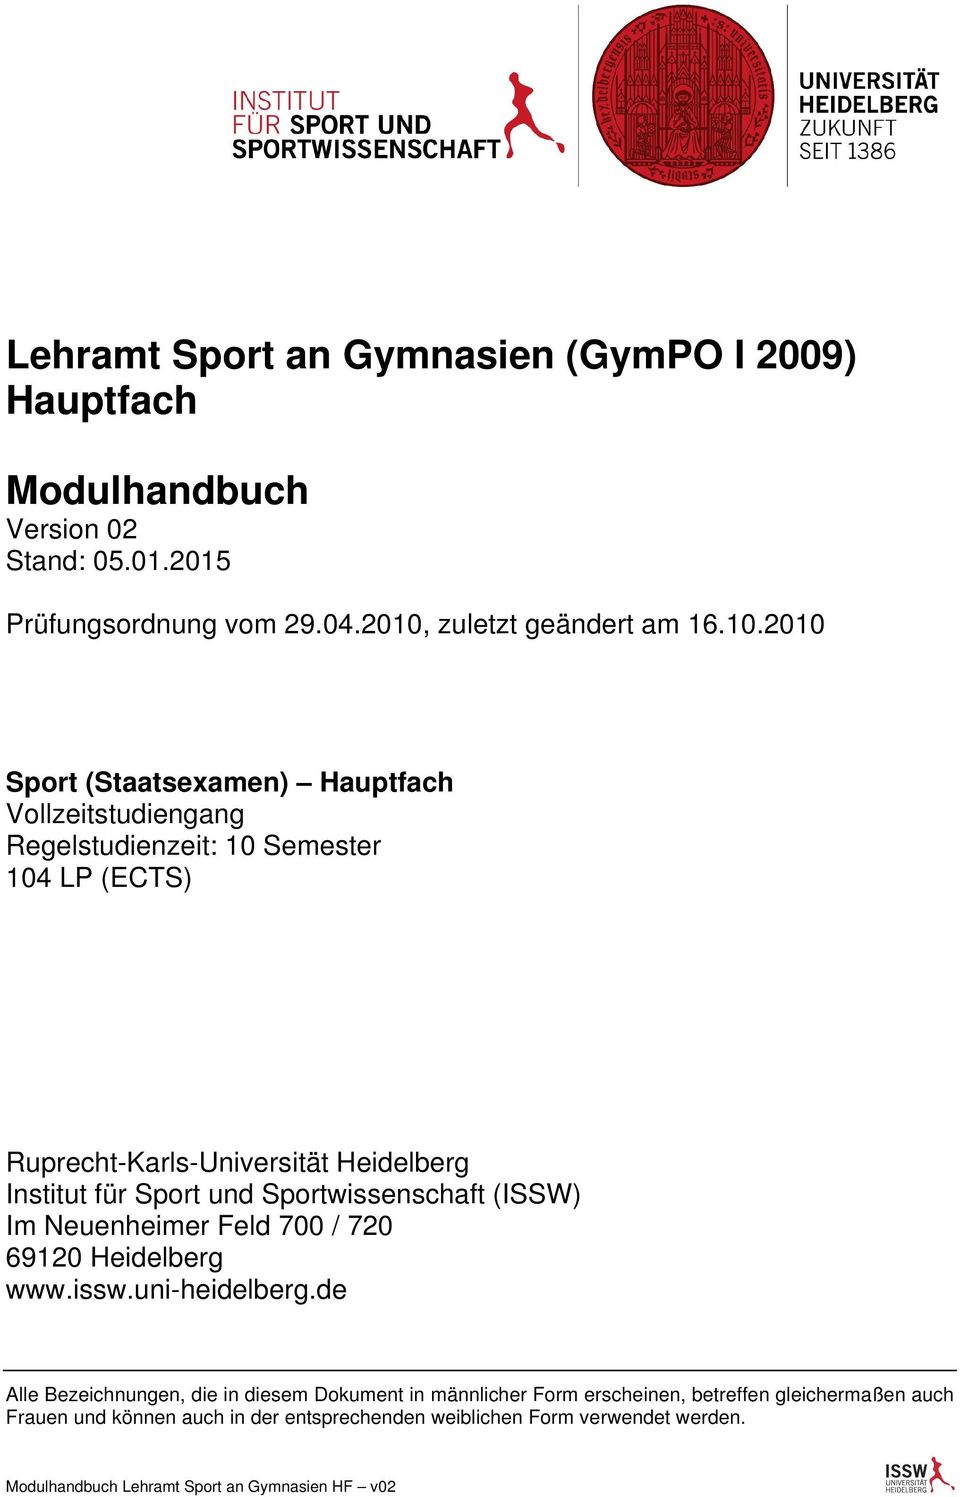 Ruprecht-Karls-Universität Heidelberg Institut Sport und Sportwissenschaft (ISSW) Im Neuenheimer Feld 700 / 720 69120 Heidelberg www.issw.